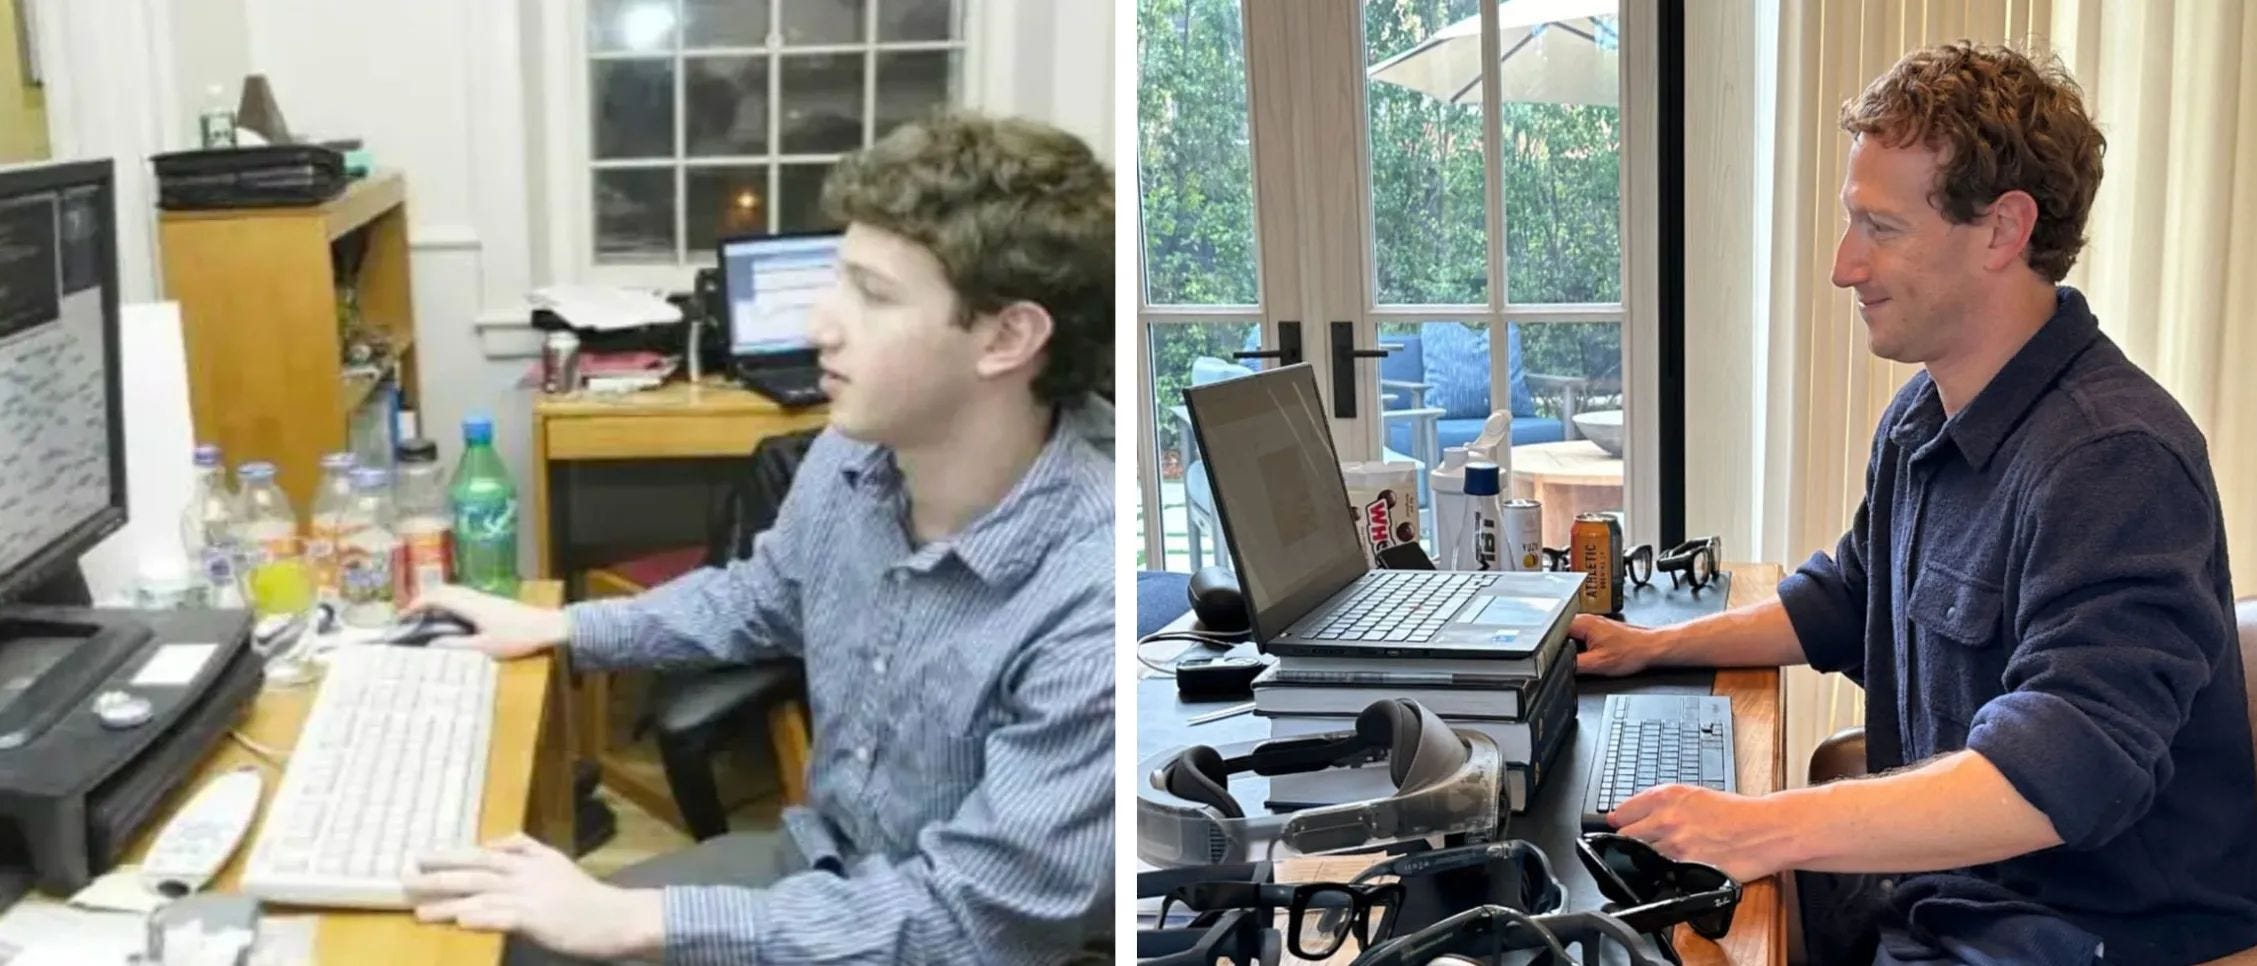 Mark Zuckerberg in den frühen Tagen der Facebook-Gründung (links) und Mark Zuckerberg heute (rechts).